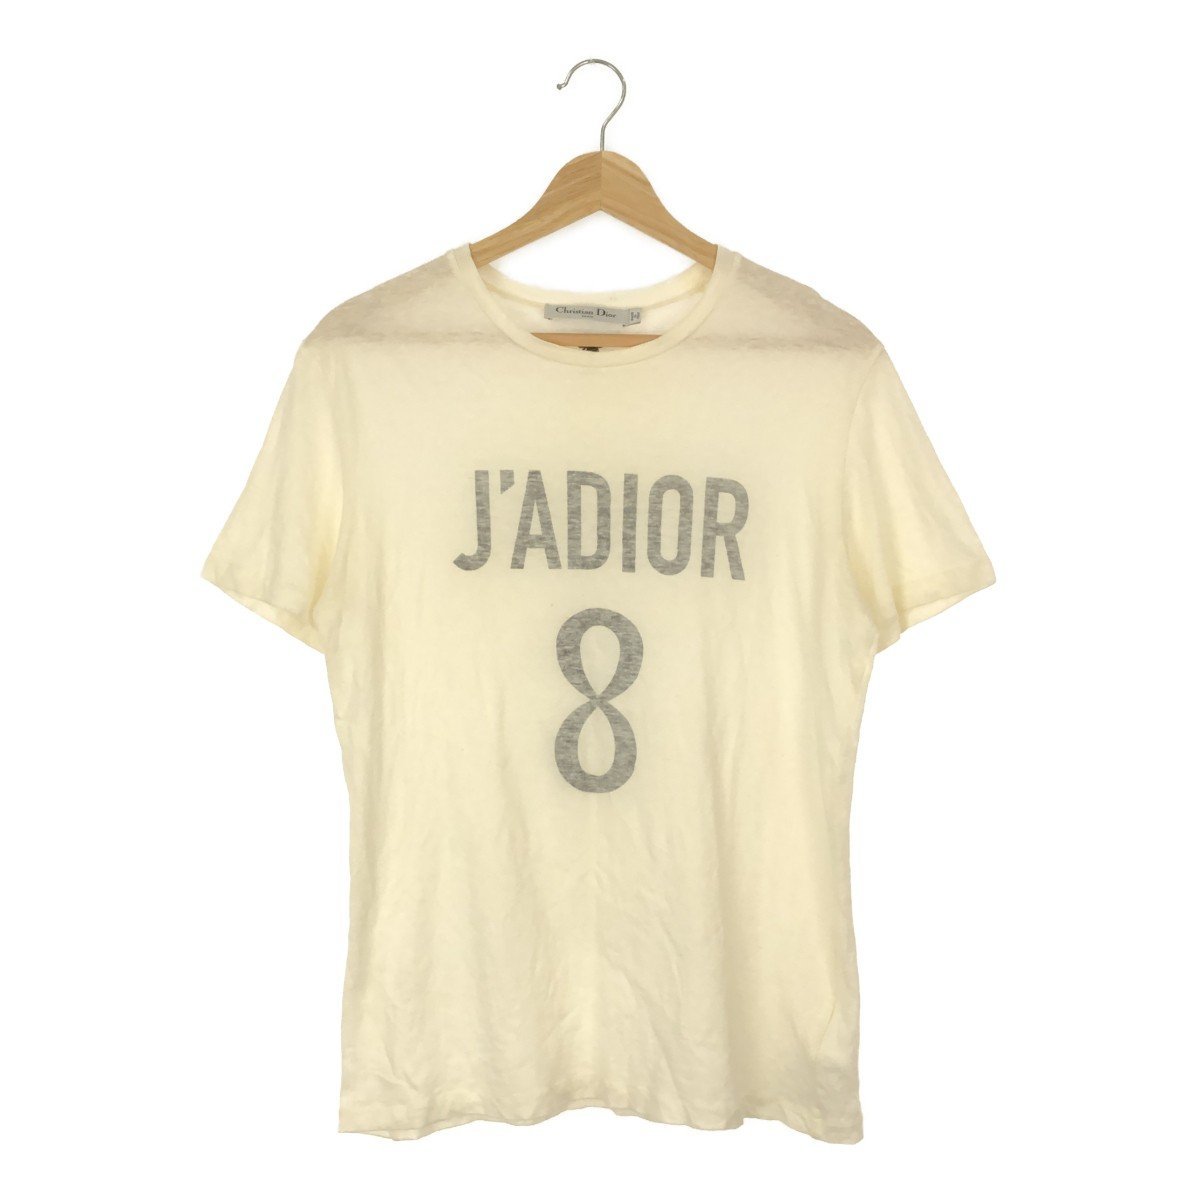 ◆中古品◆クリスチャンディオール Christian Dior J'ADIOR 8 Tシャツ カットソー 半袖 Sサイズ ブランド トップス J46741NSC_画像1